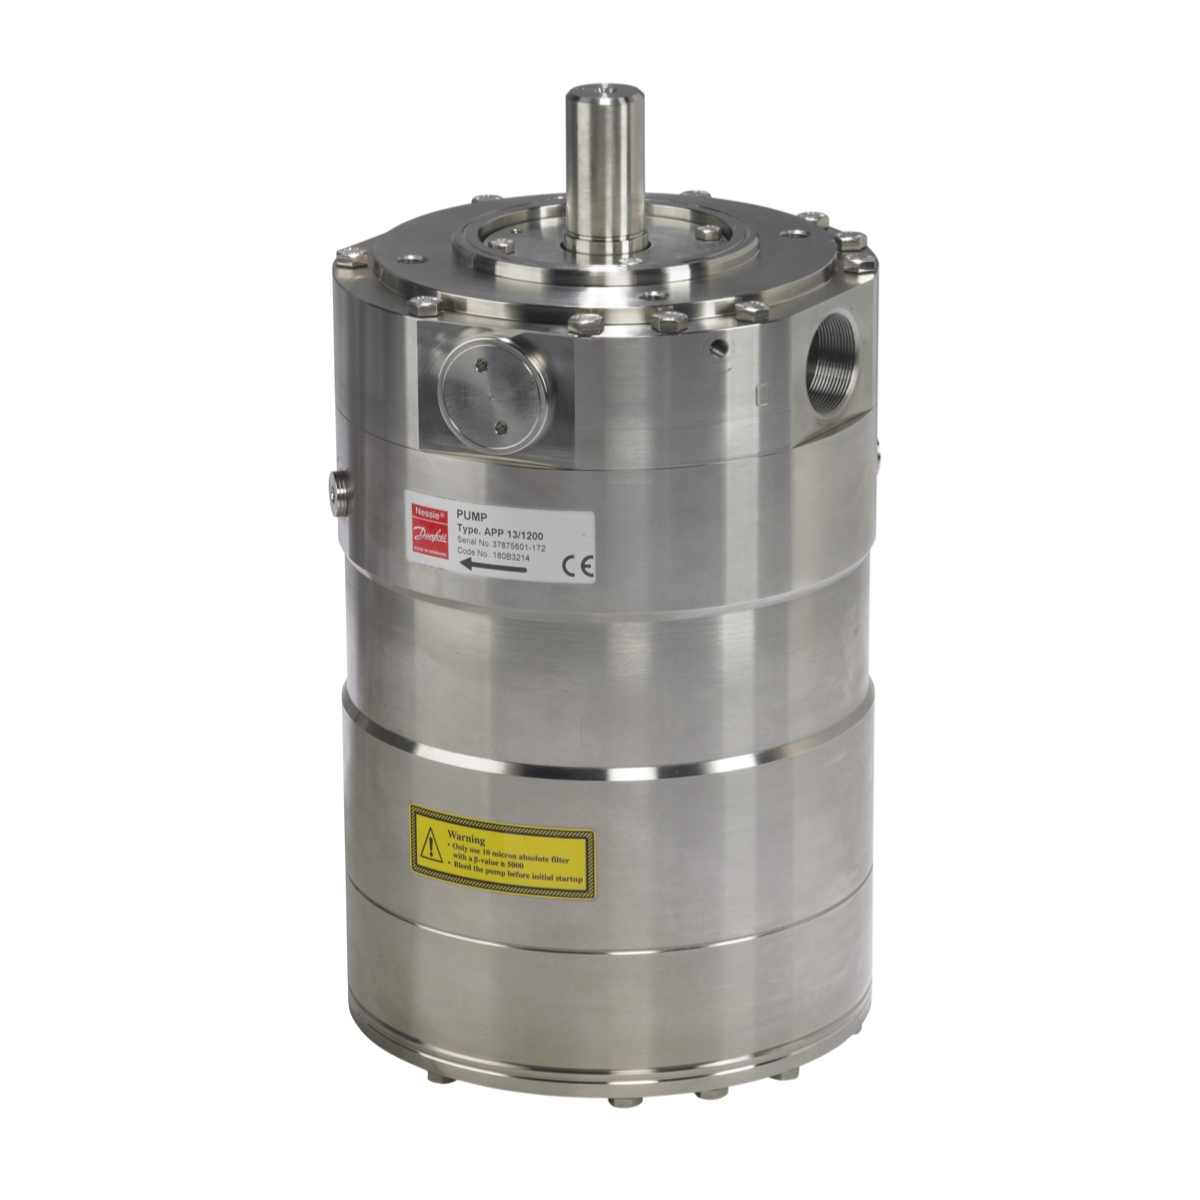 Danfoss APP 13 180B3214 Axial Piston High Pressure Pump for salt water such as, seawater desalination.